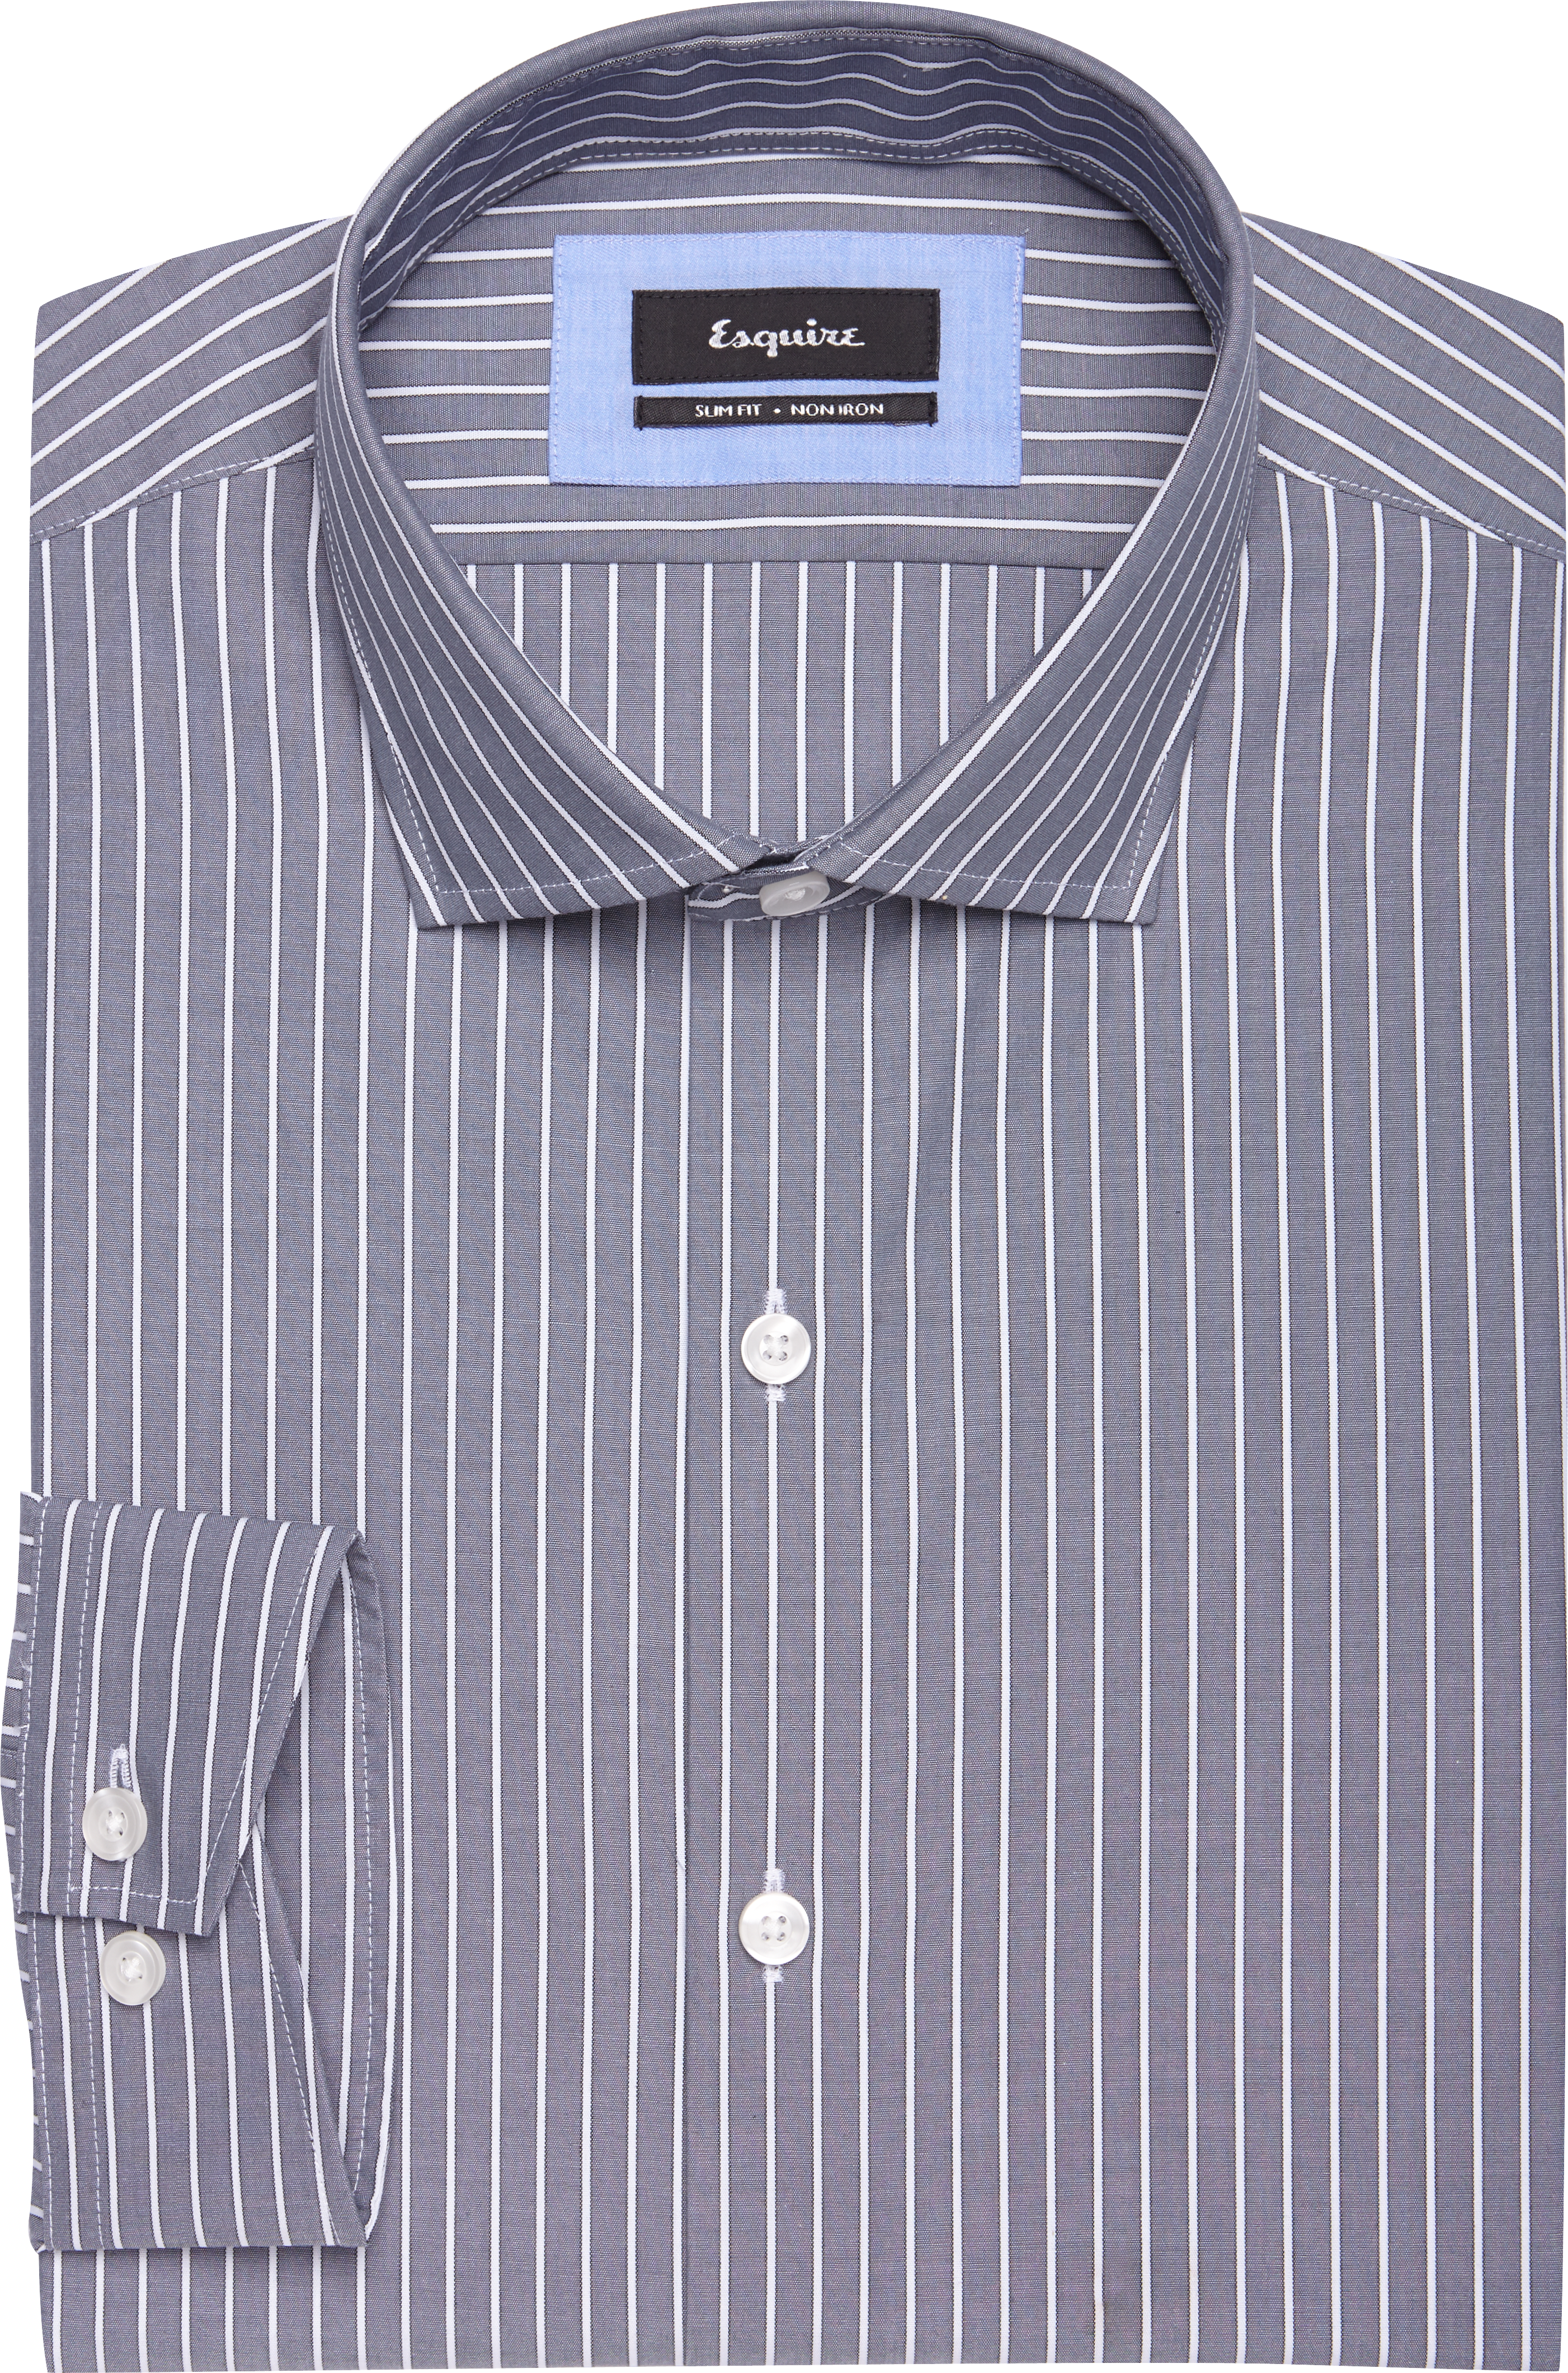 Esquire Light Gray Stripe Slim Fit Dress Shirt - Men's Sale | Men's ...